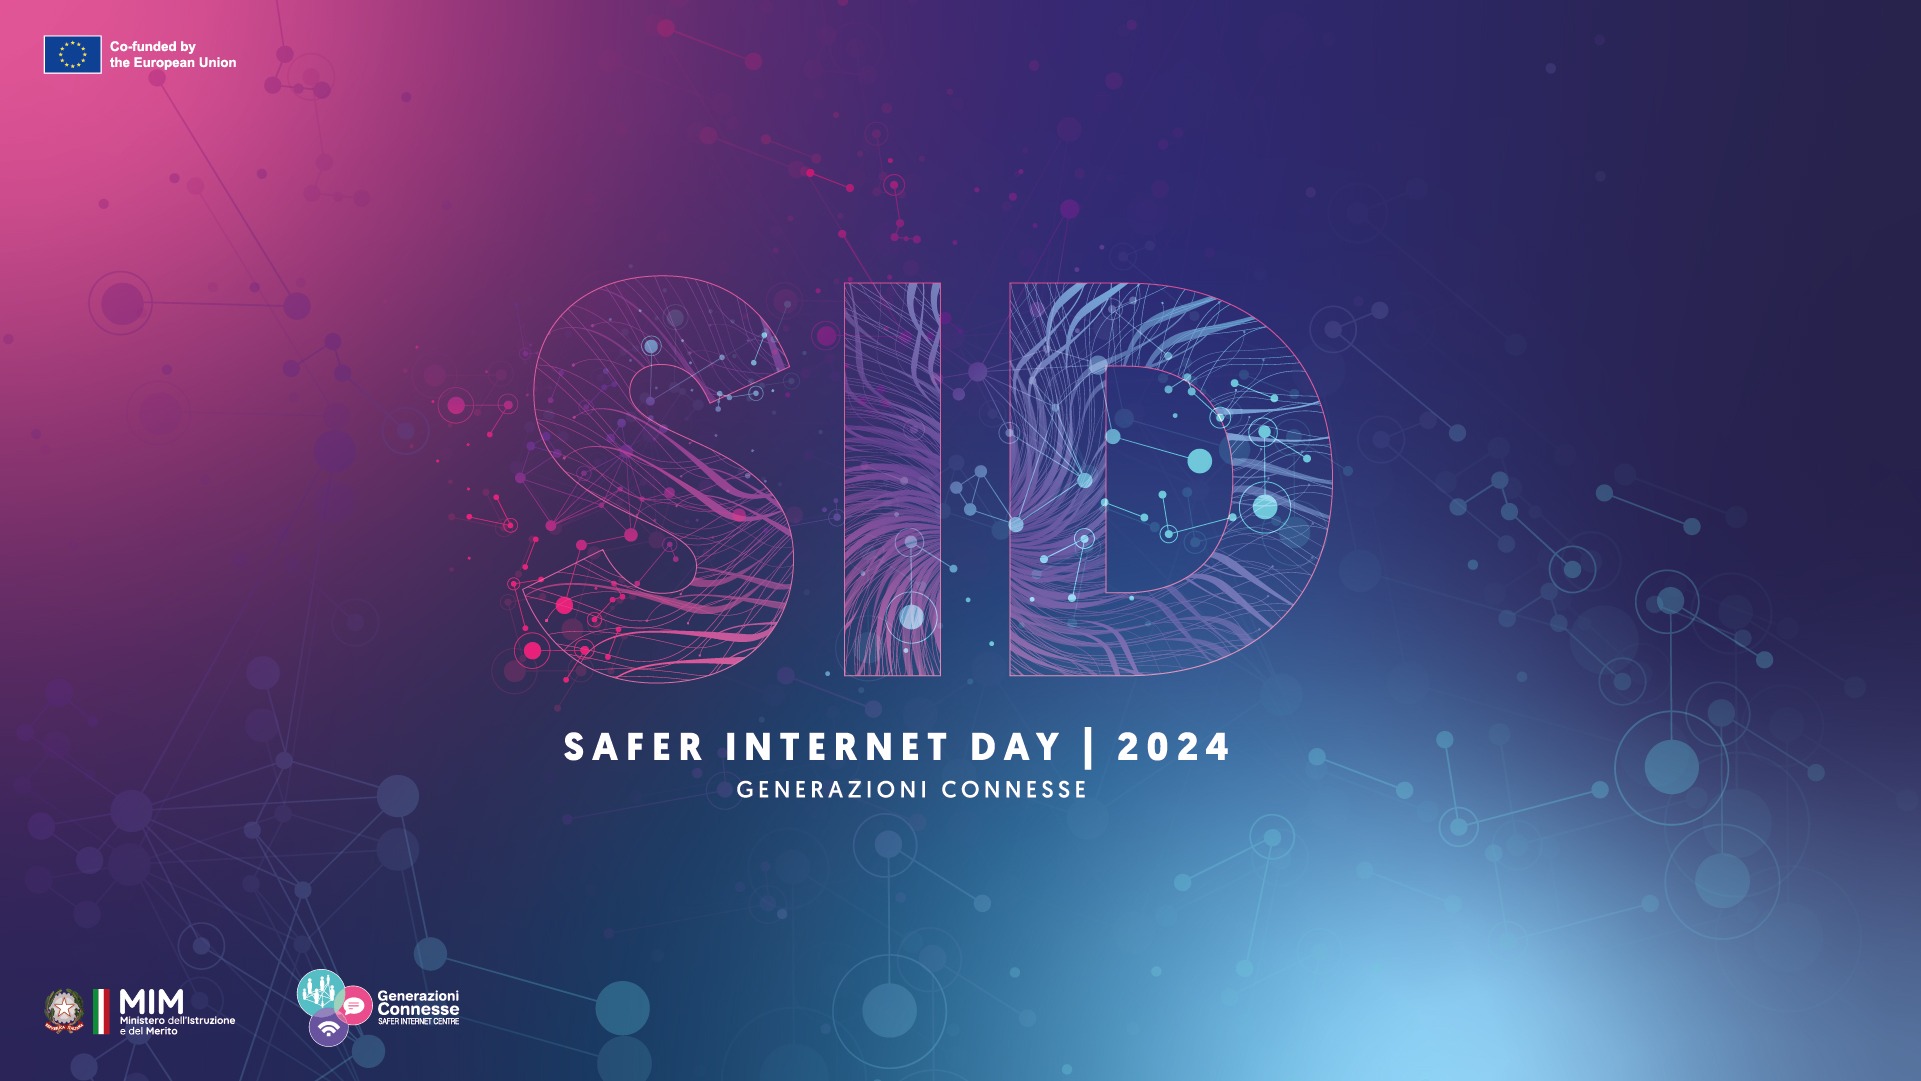 Safer internet day 2024